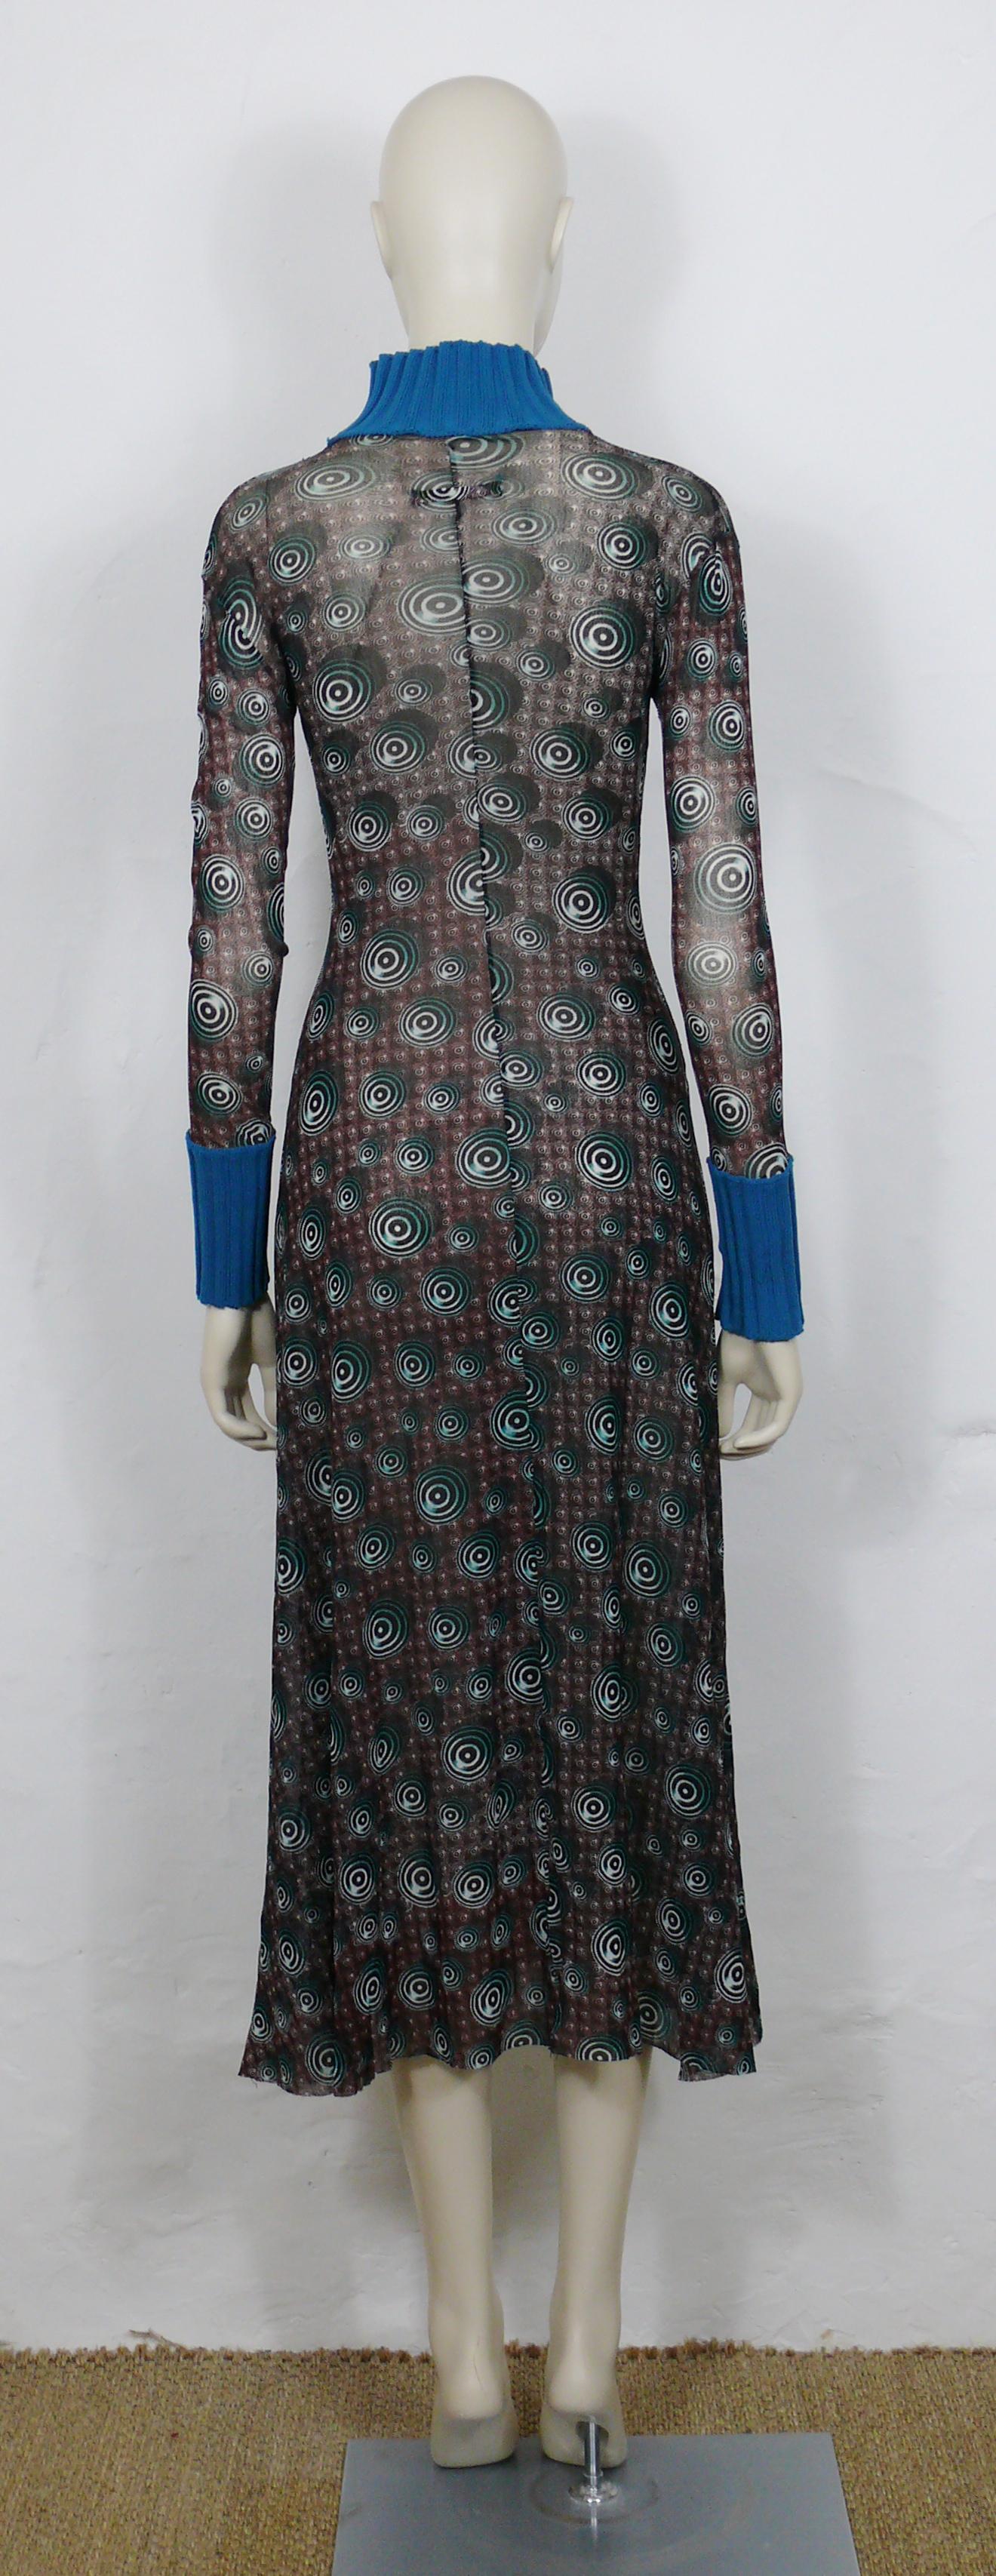 Jean Paul Gaultier Vintage Op Art Sheer Mesh Dress Size M For Sale 2